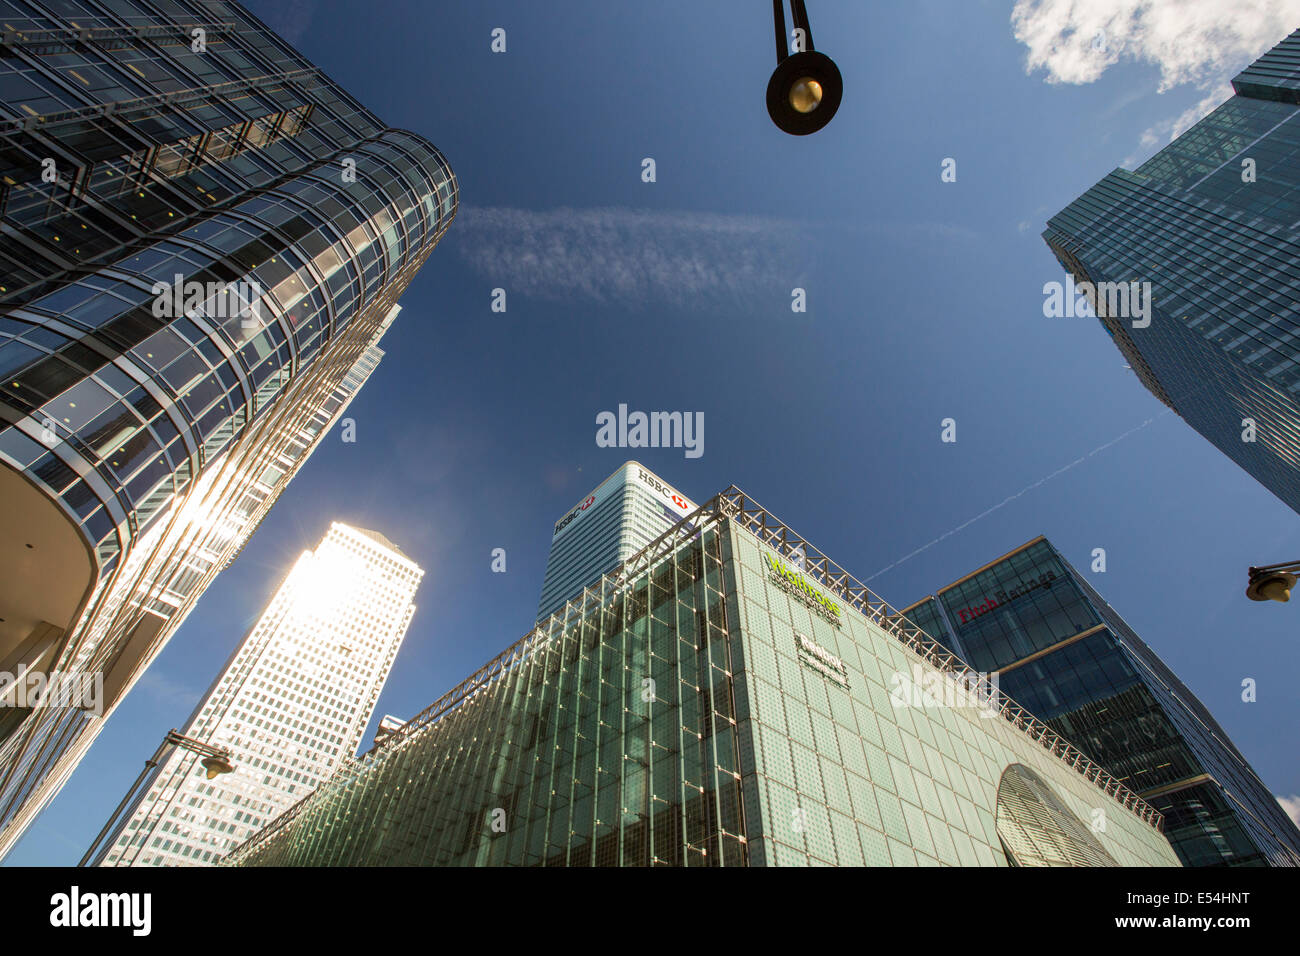 Les banques du Canary Wharf, London, UK. Banque D'Images